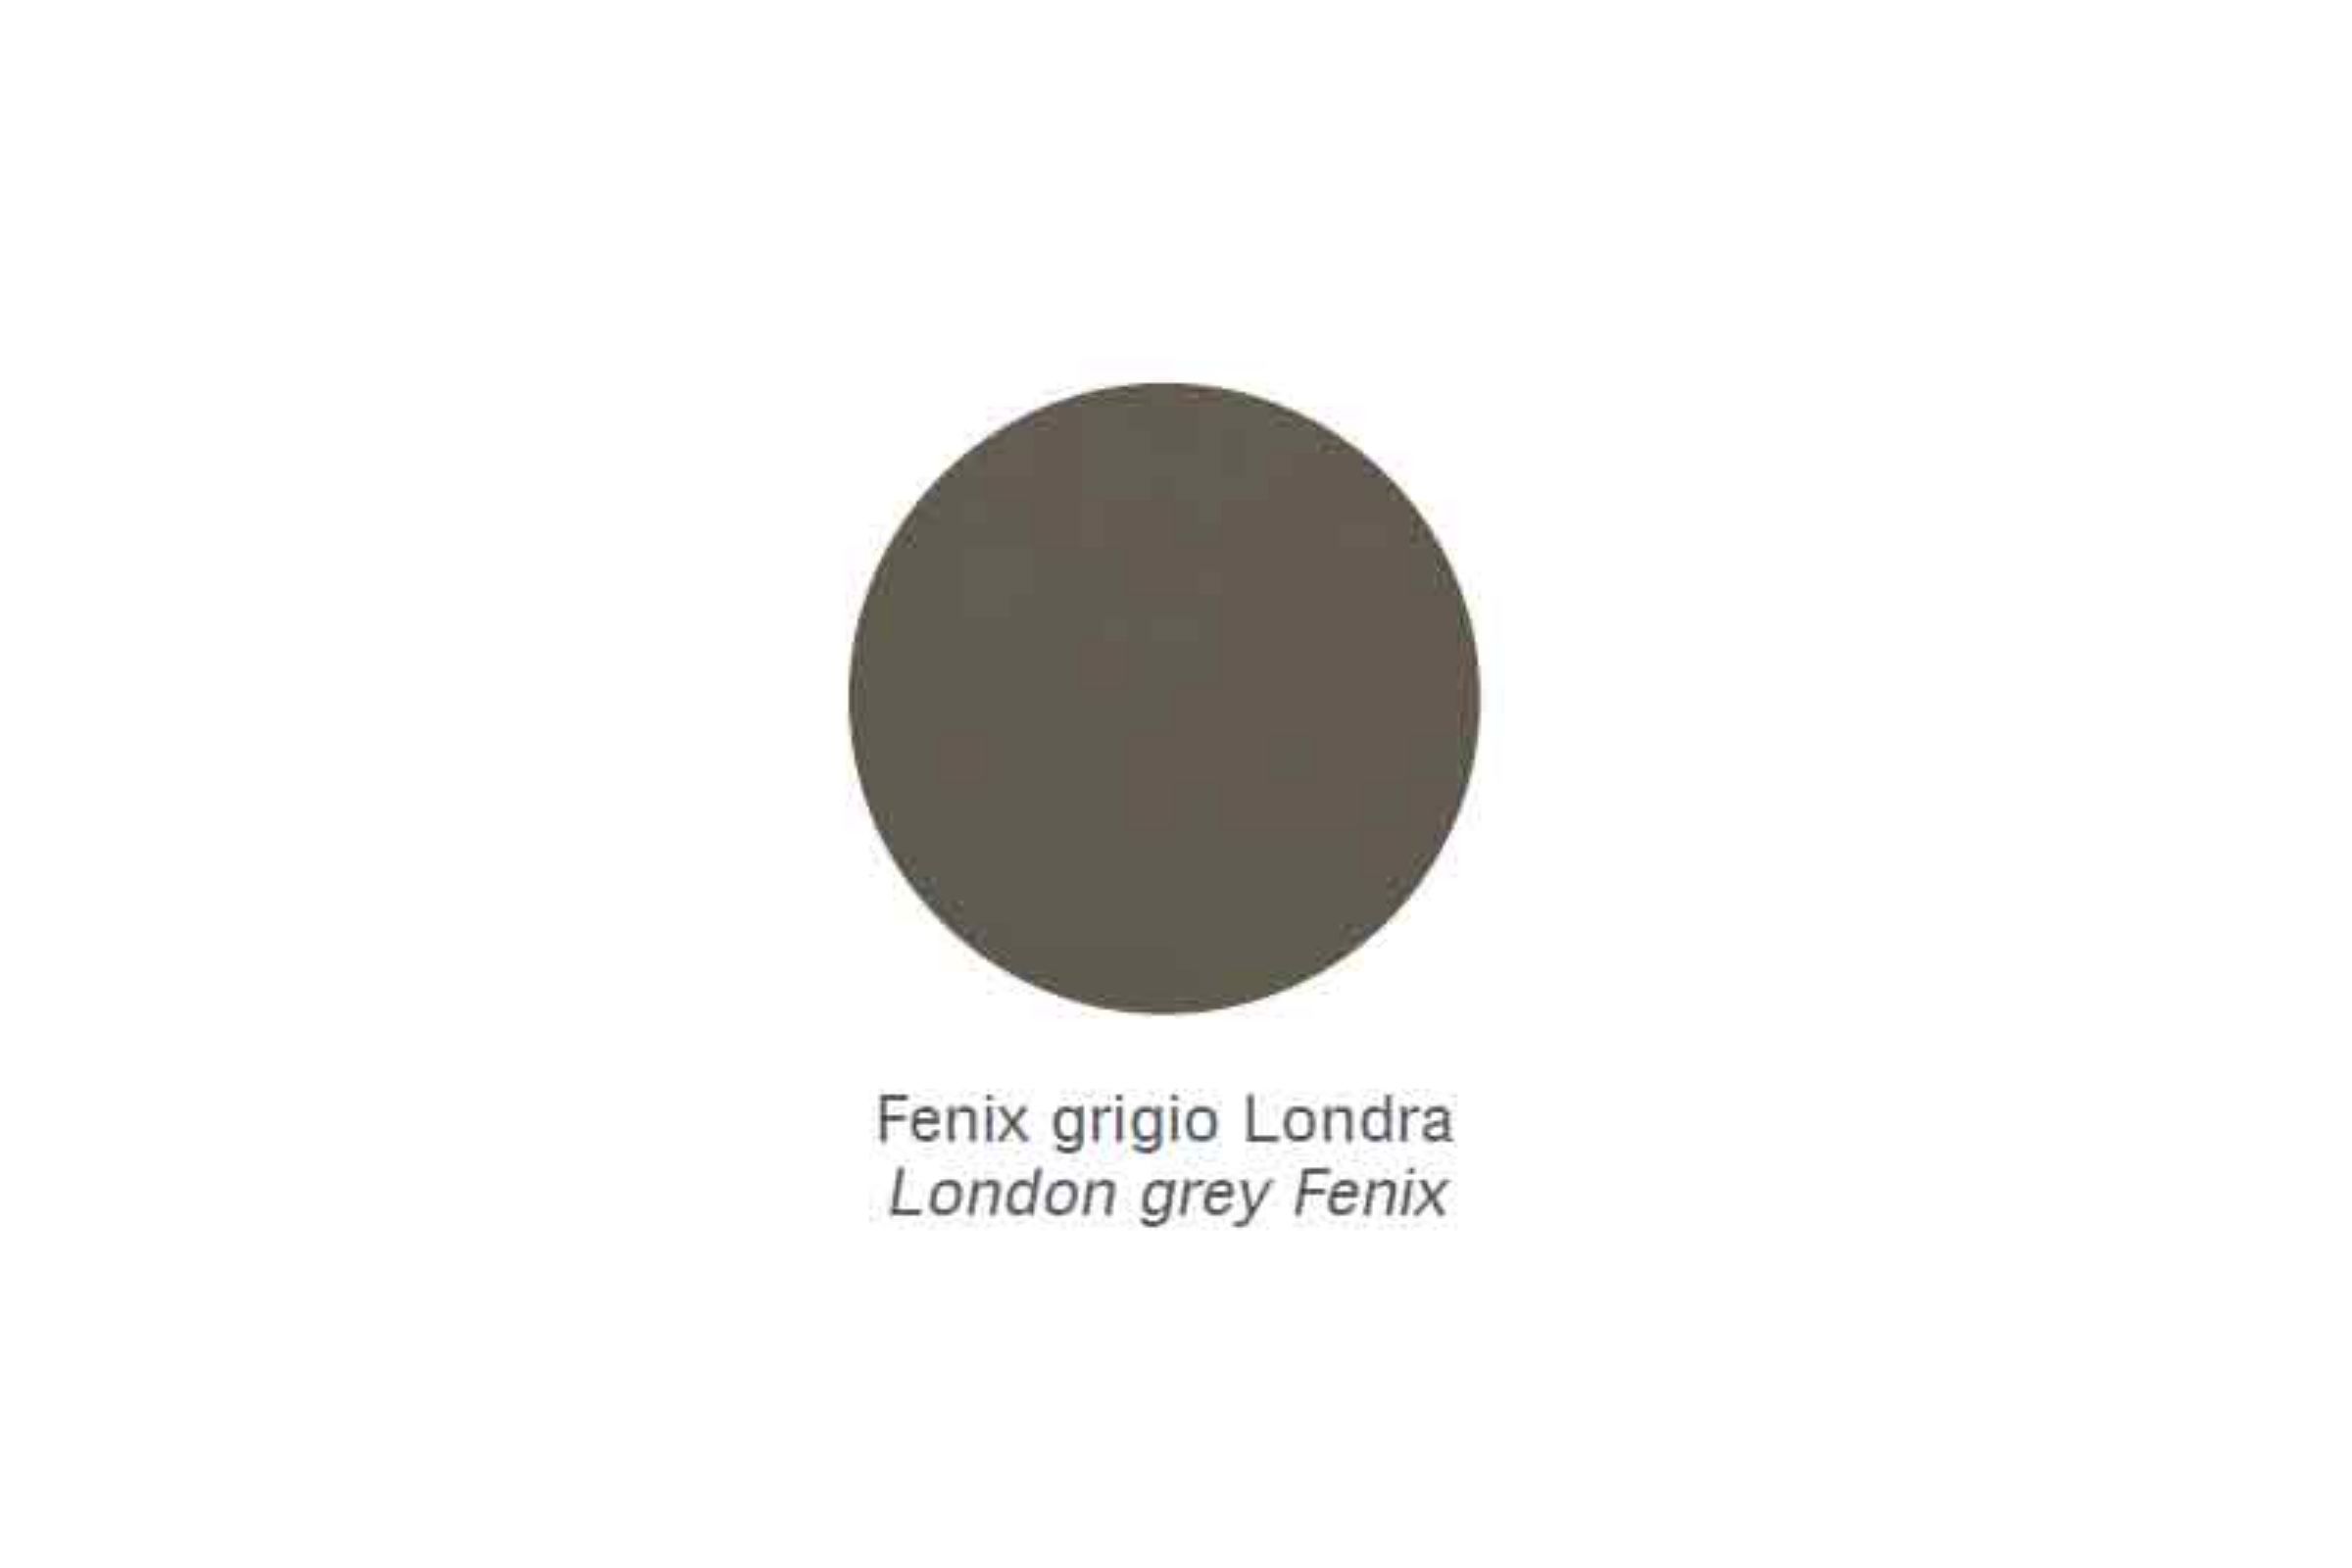 Mensola Zen - Mensola Zen Fenix grigio Londra /30